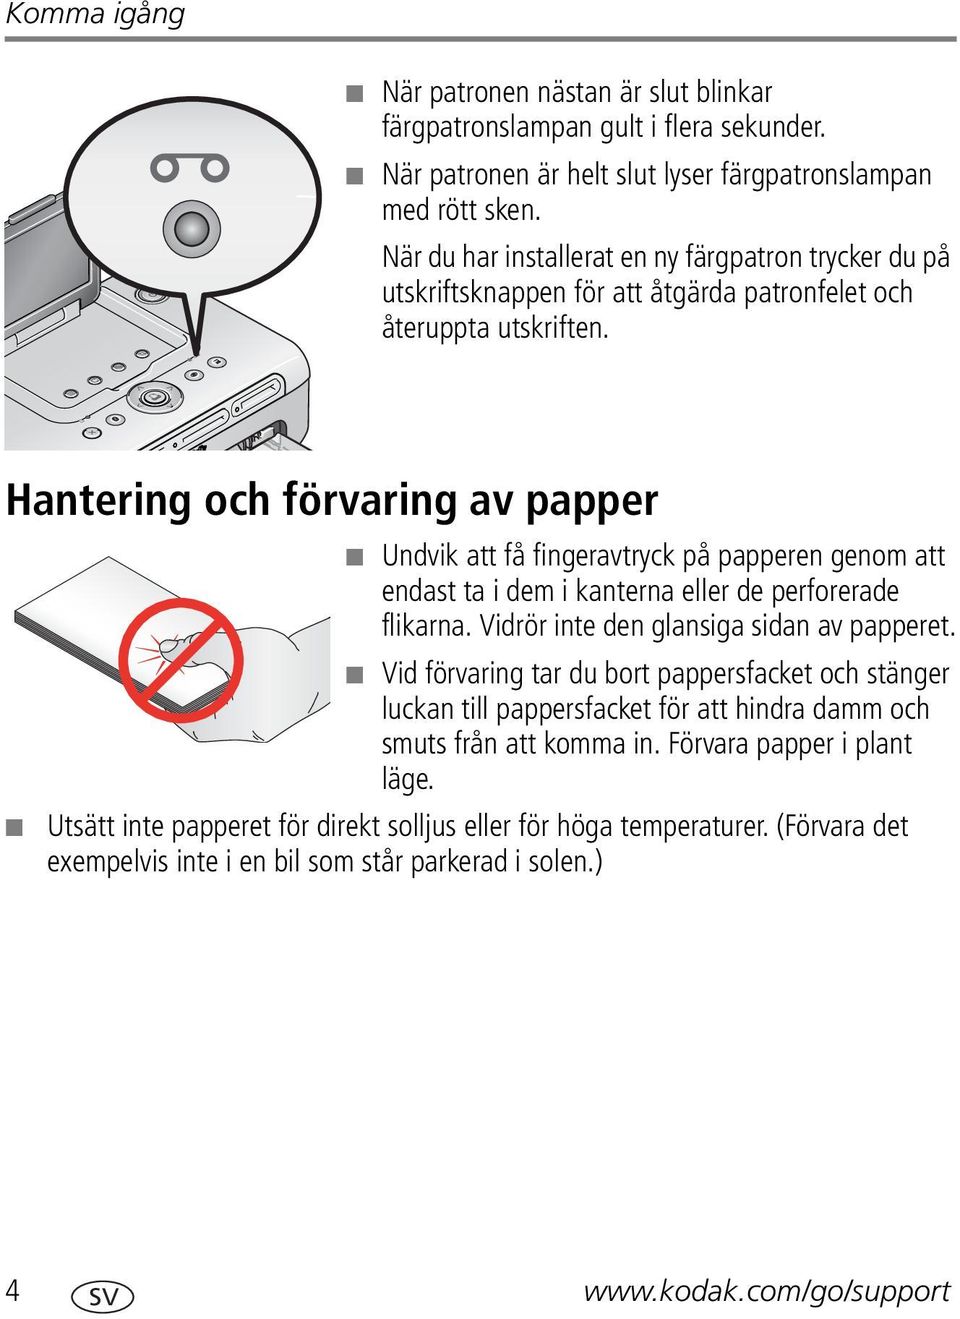 Hantering och förvaring av papper Undvik att få fingeravtryck på papperen genom att endast ta i dem i kanterna eller de perforerade flikarna. Vidrör inte den glansiga sidan av papperet.